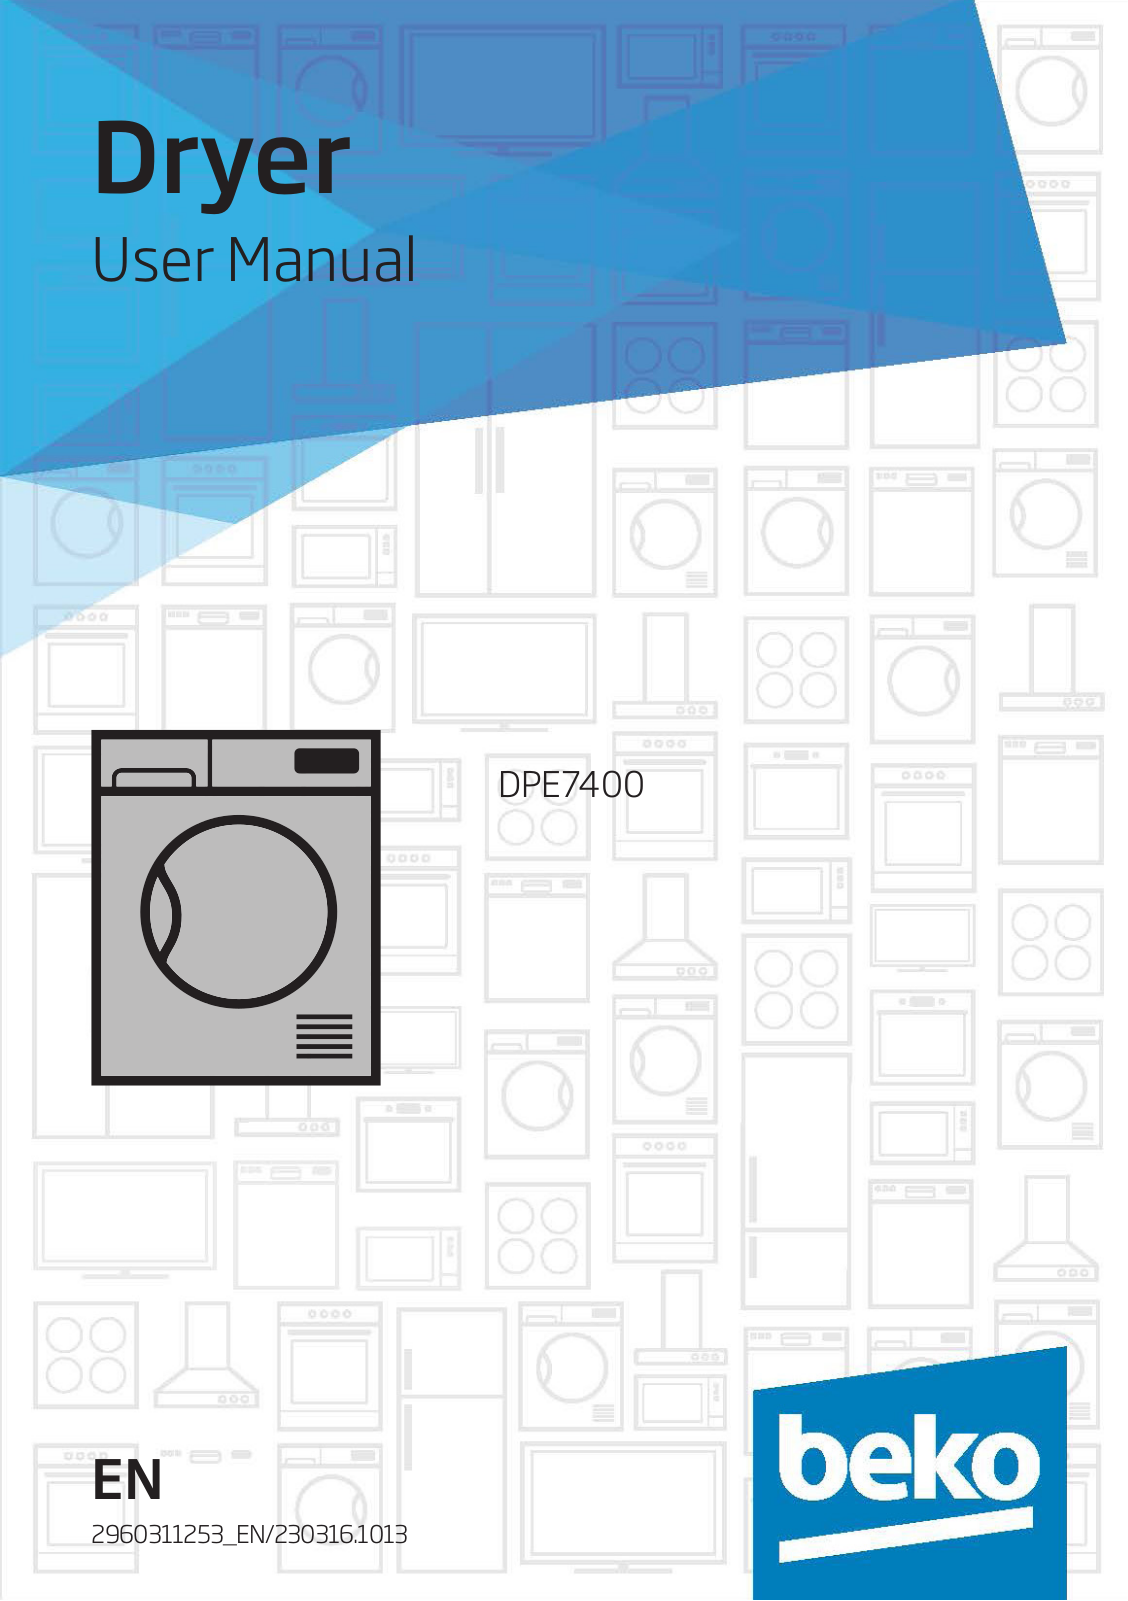 Beko DPE7400 User Manual